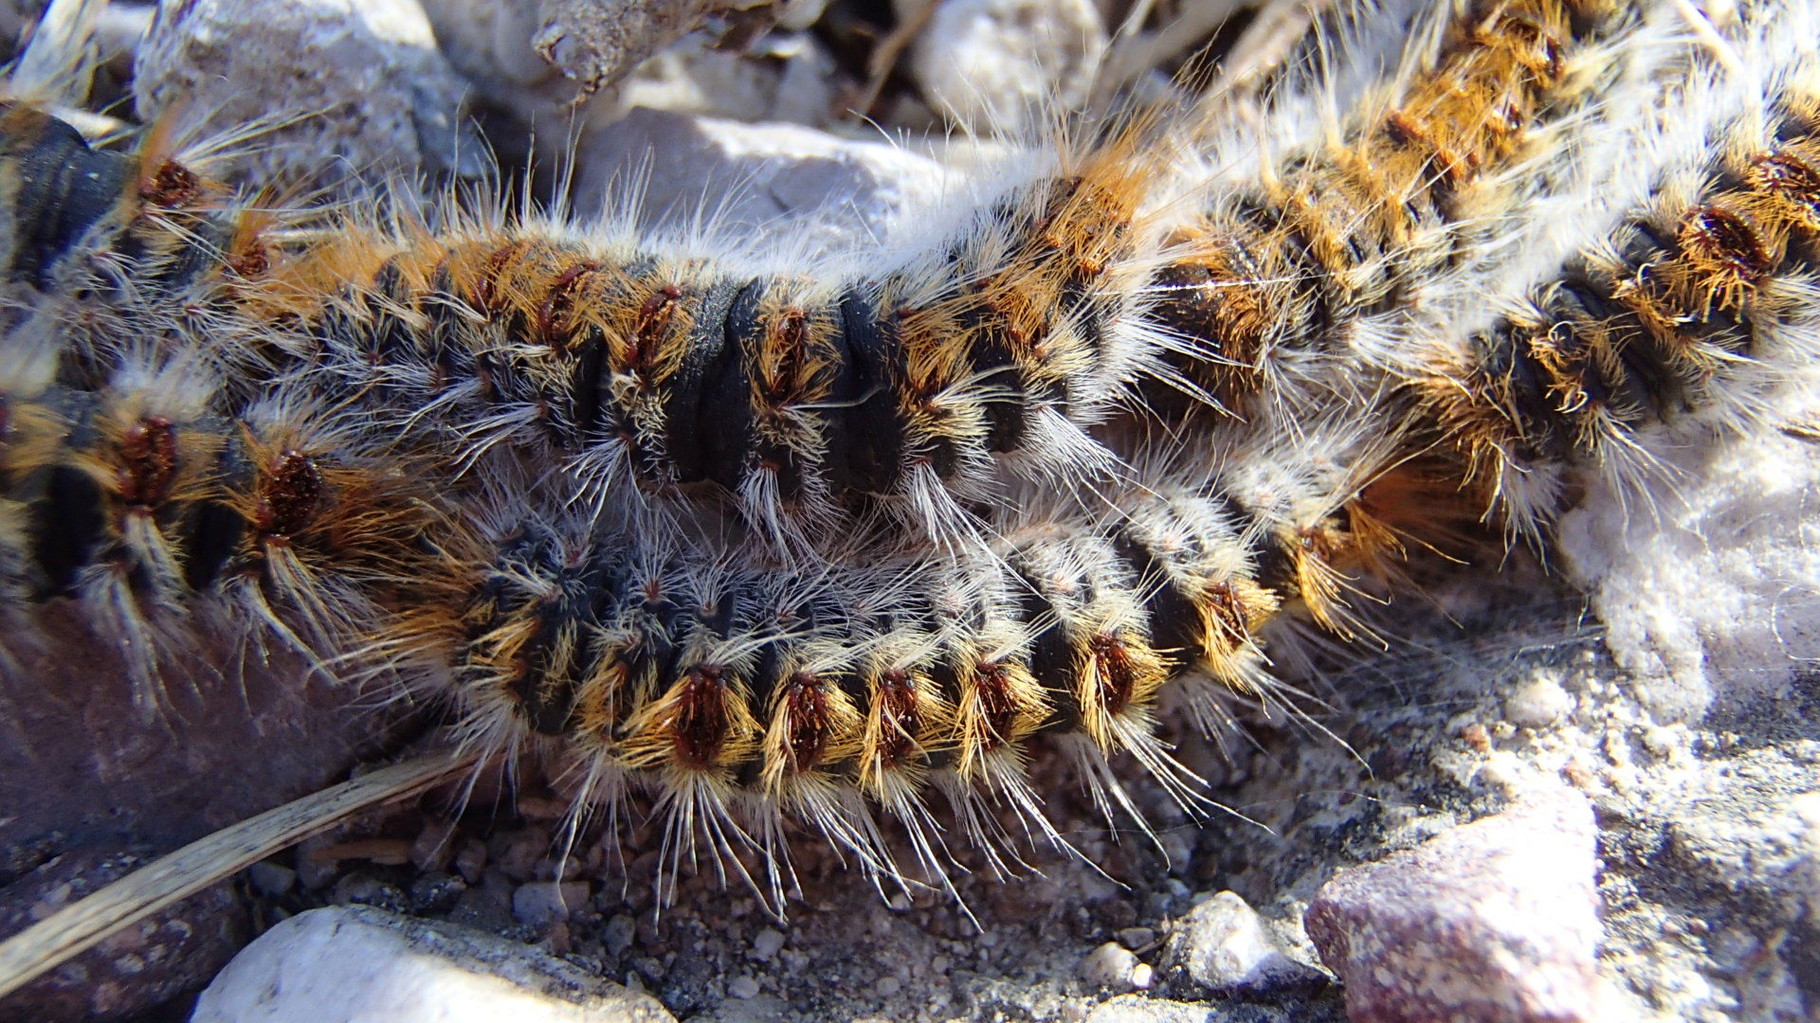 Fluffy caterpillars